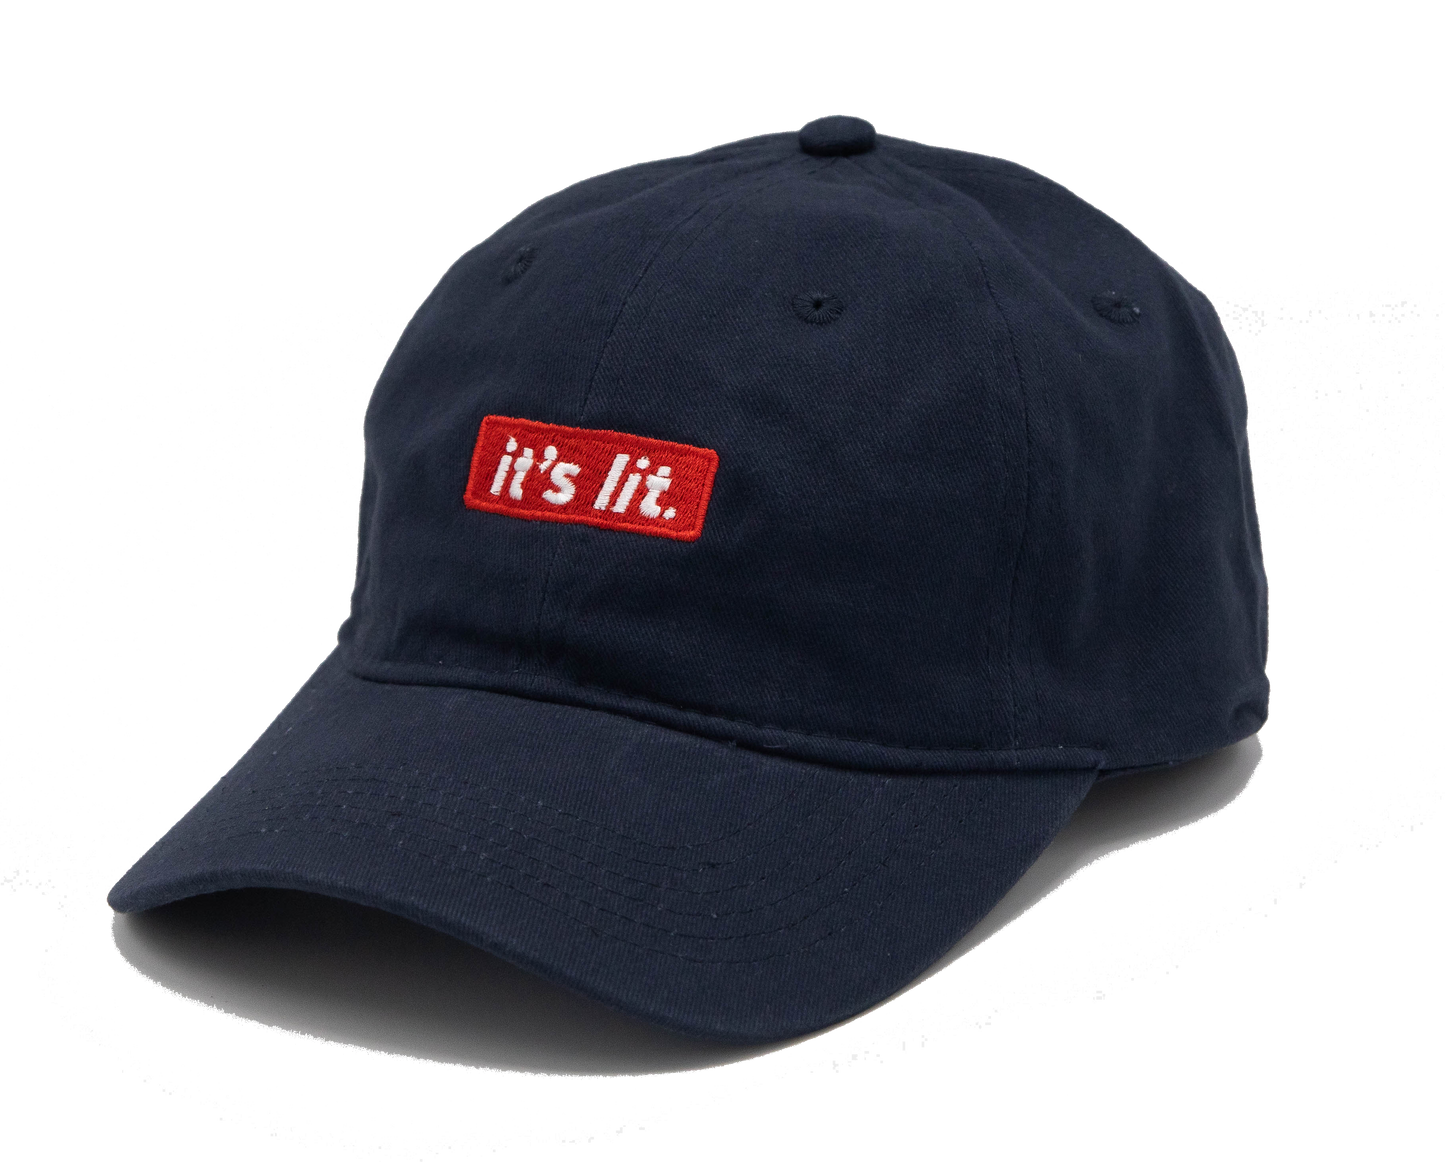 It's Lit Dad Hat